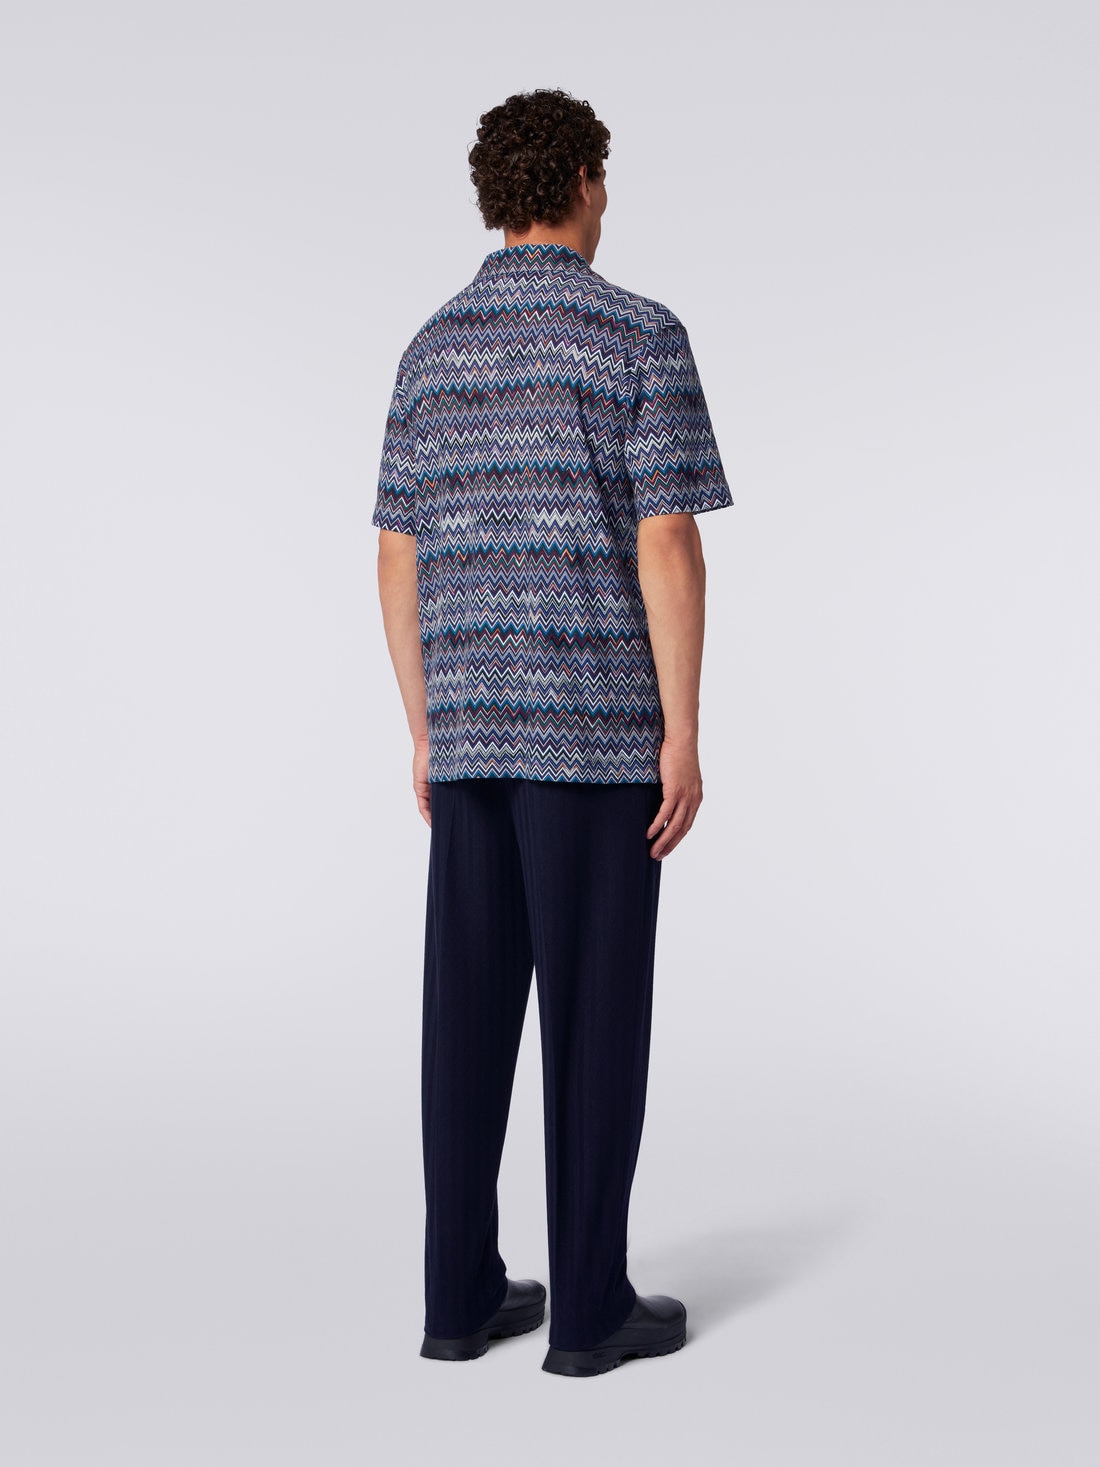 Camisa modelo bolos de manga corta de algodón y viscosa en zigzag, Azul Marino  - US23WJ08BR00OUSM8Y1 - 3